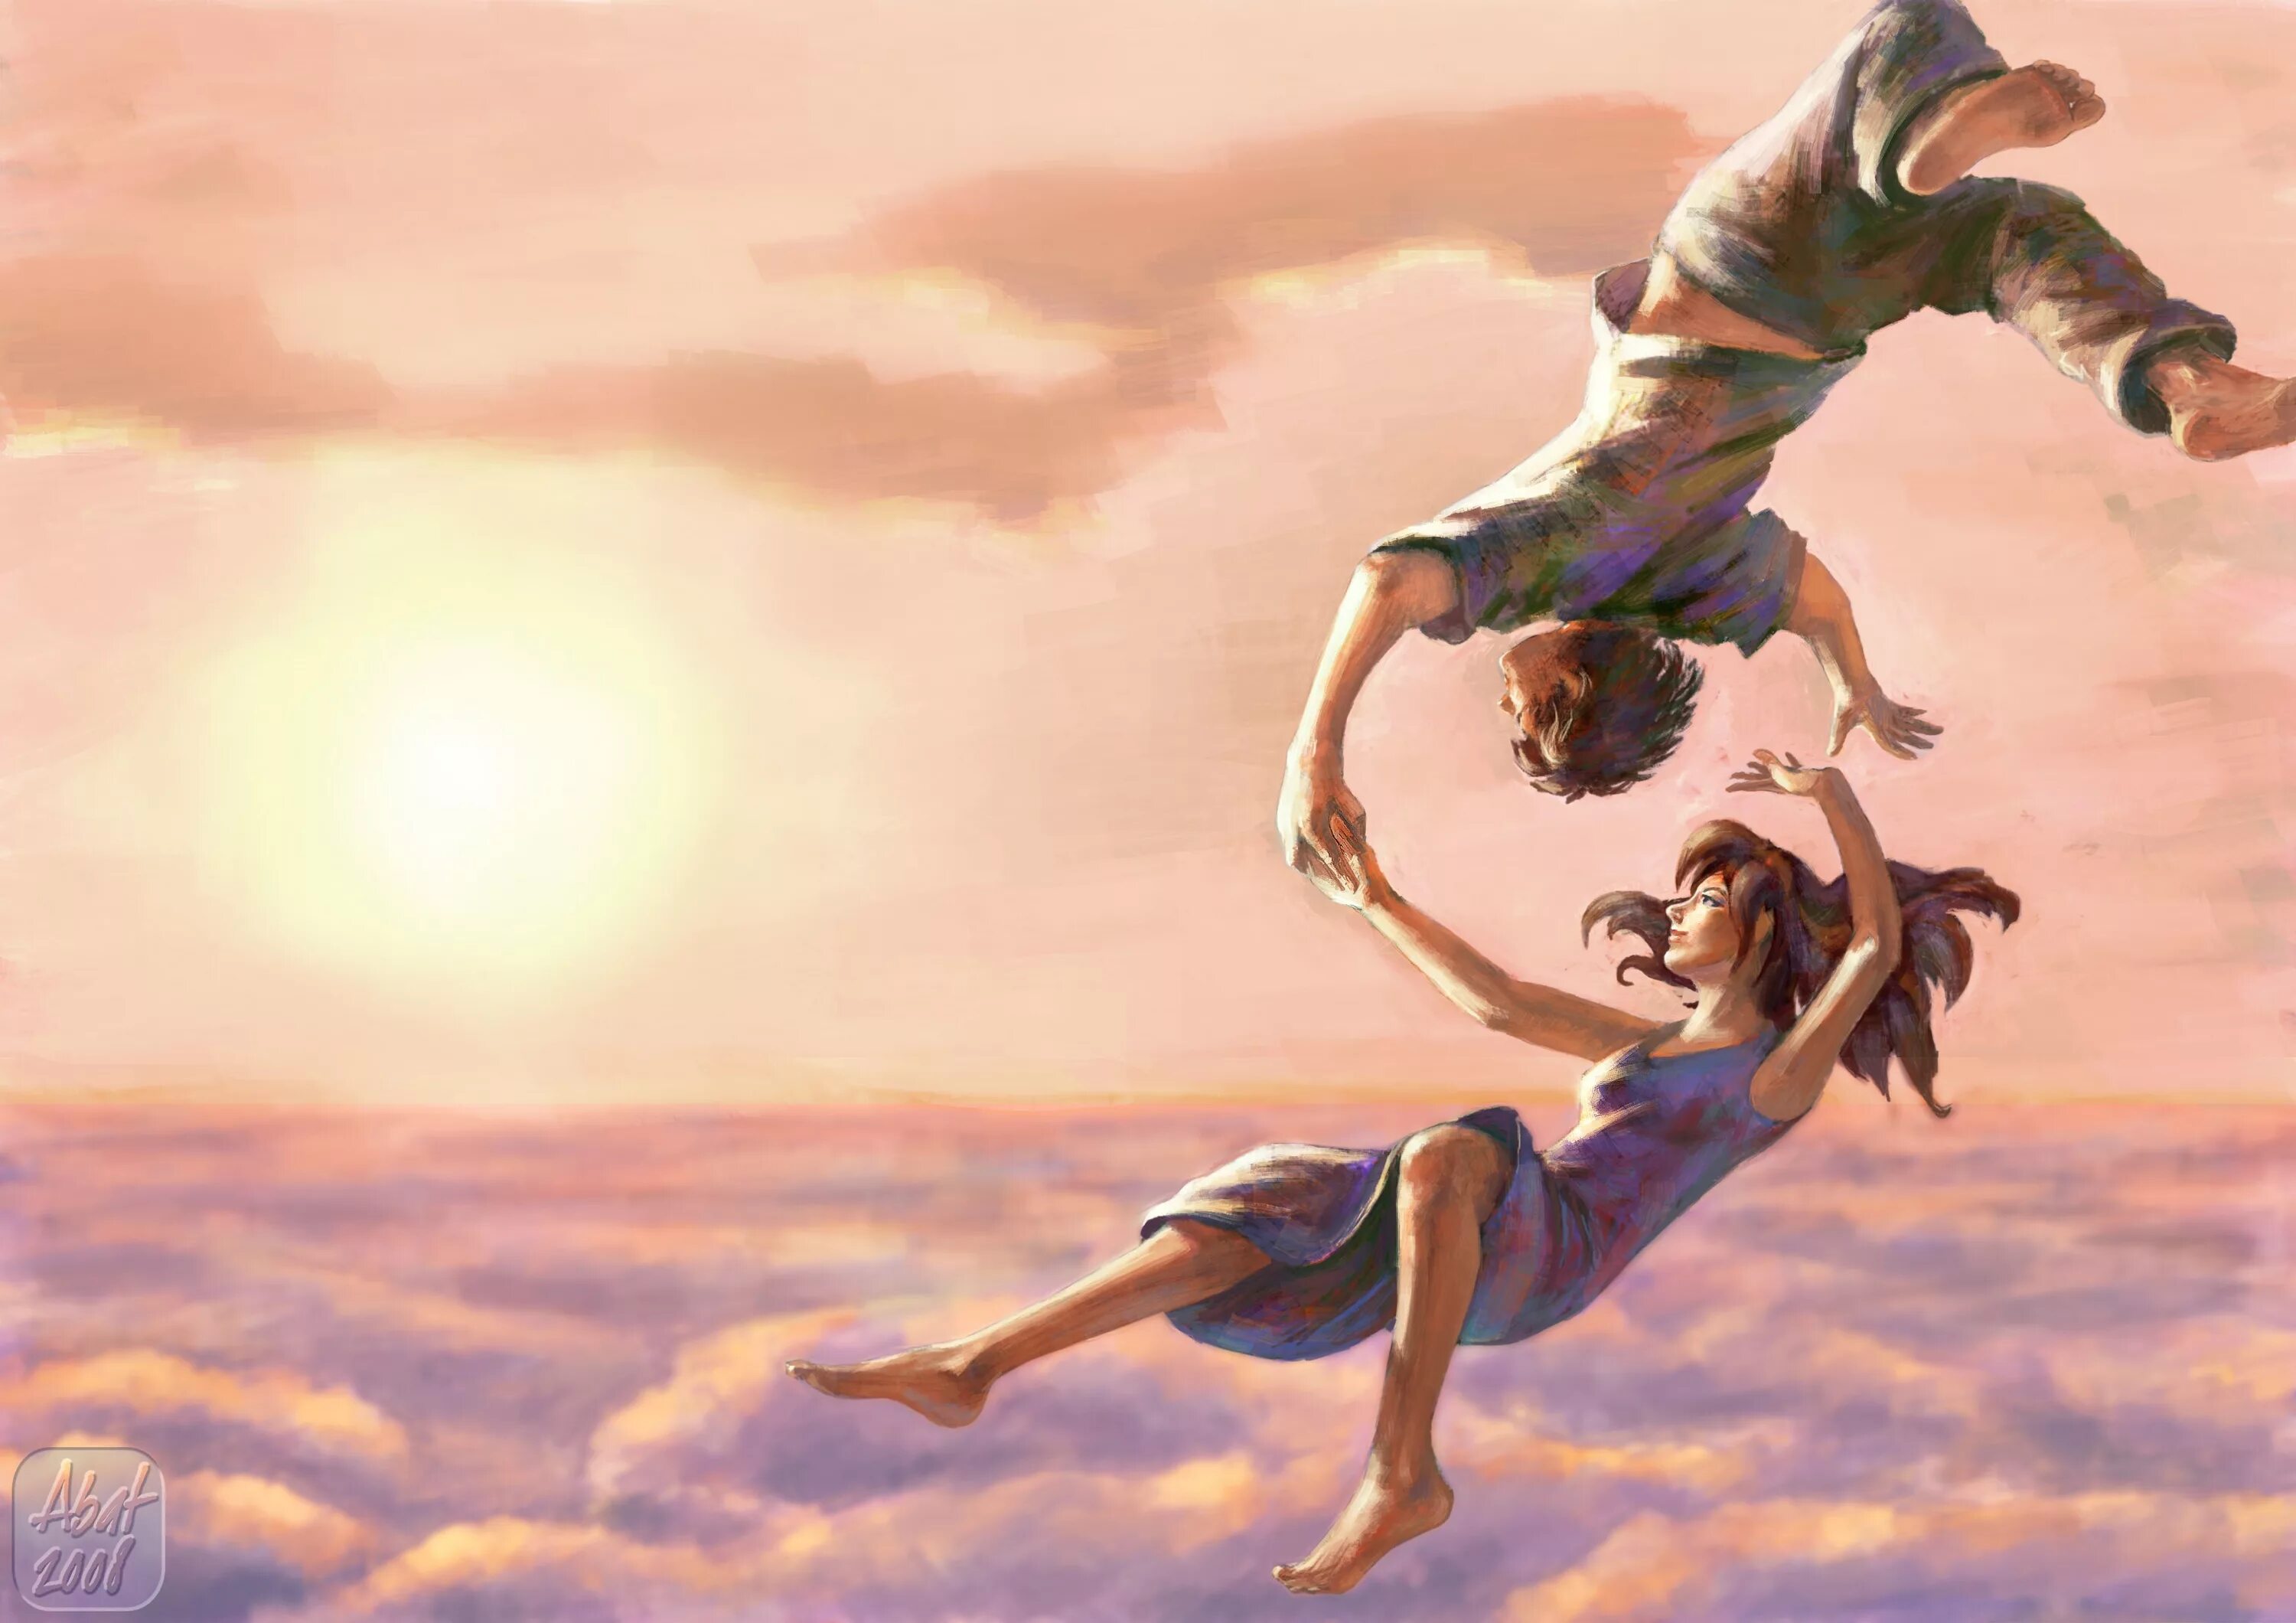 Танец полетели. Девушка в прыжке. Картина счастье. Красивые иллюстрации. Полет души.